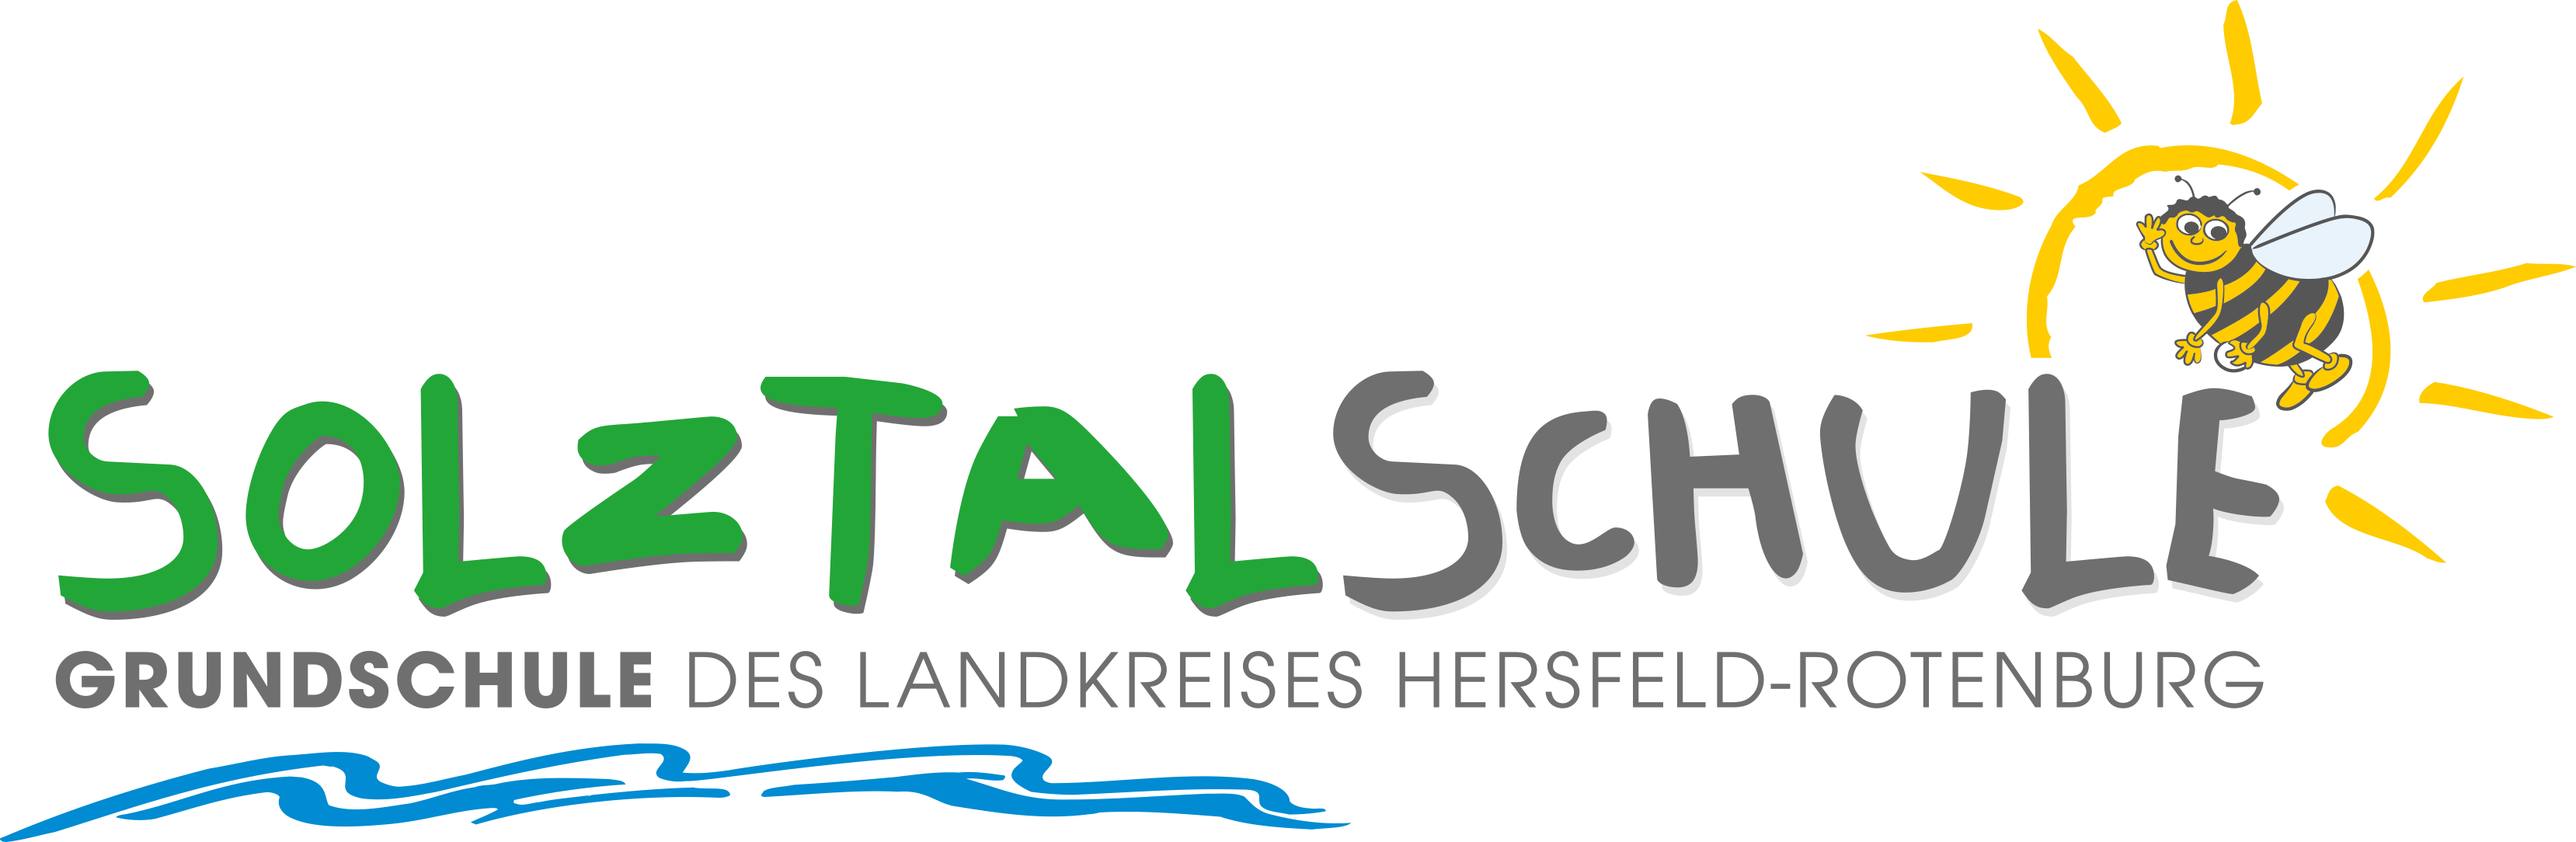 Webseite der Solztalschule Sorga